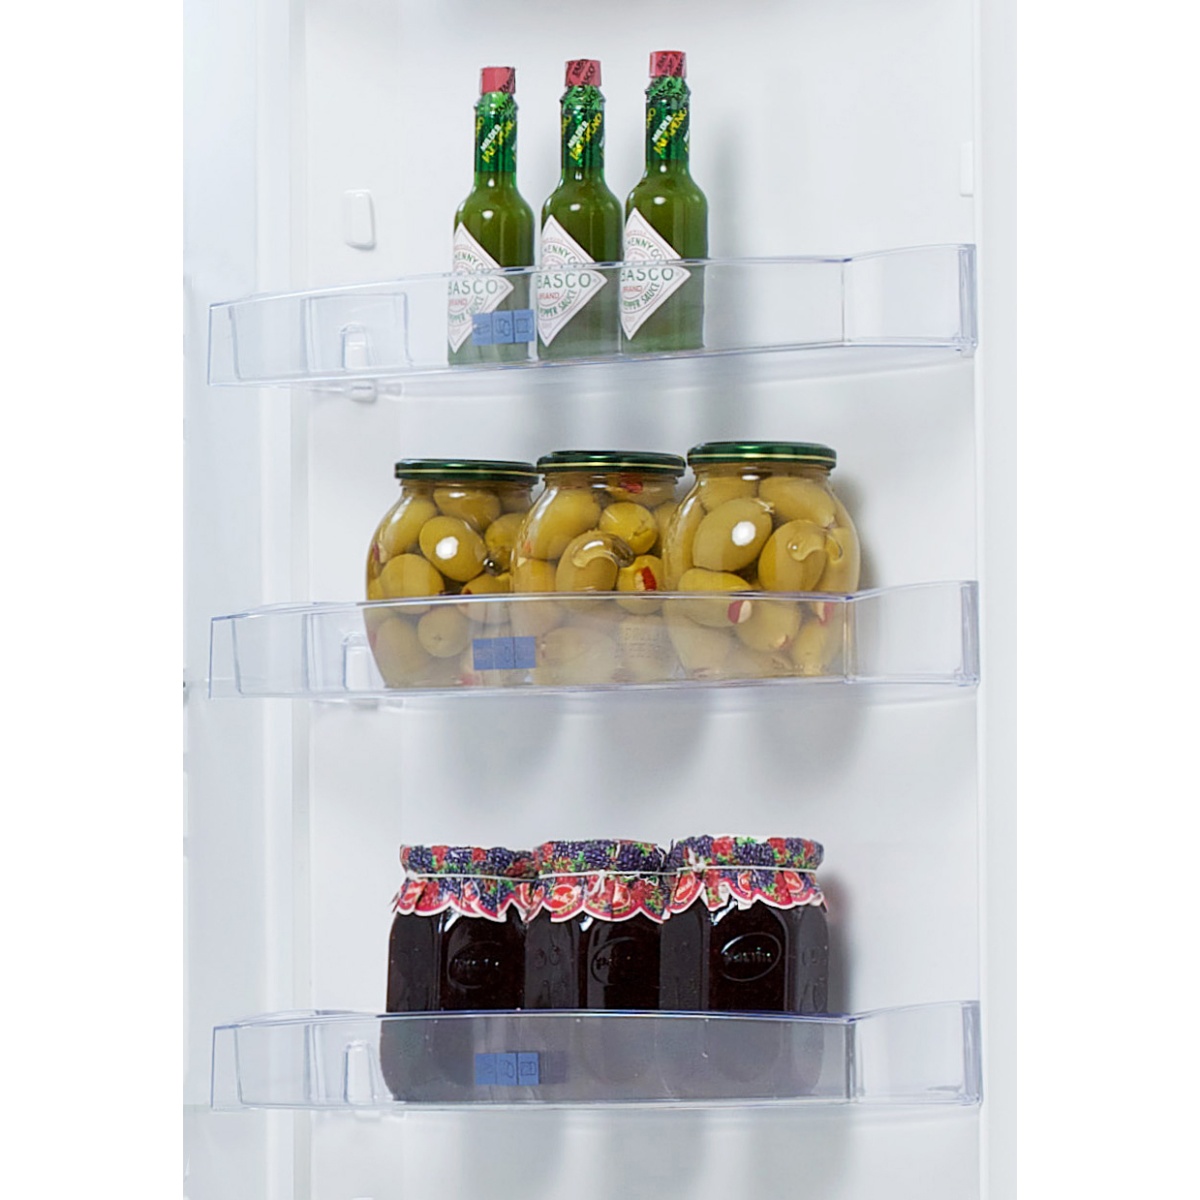 Холодильник Snaige C 29SM-T1002F1 (Ice Logic / Объем - 270 литров / Высота - 145 см / A++ / белый / однодверный) 